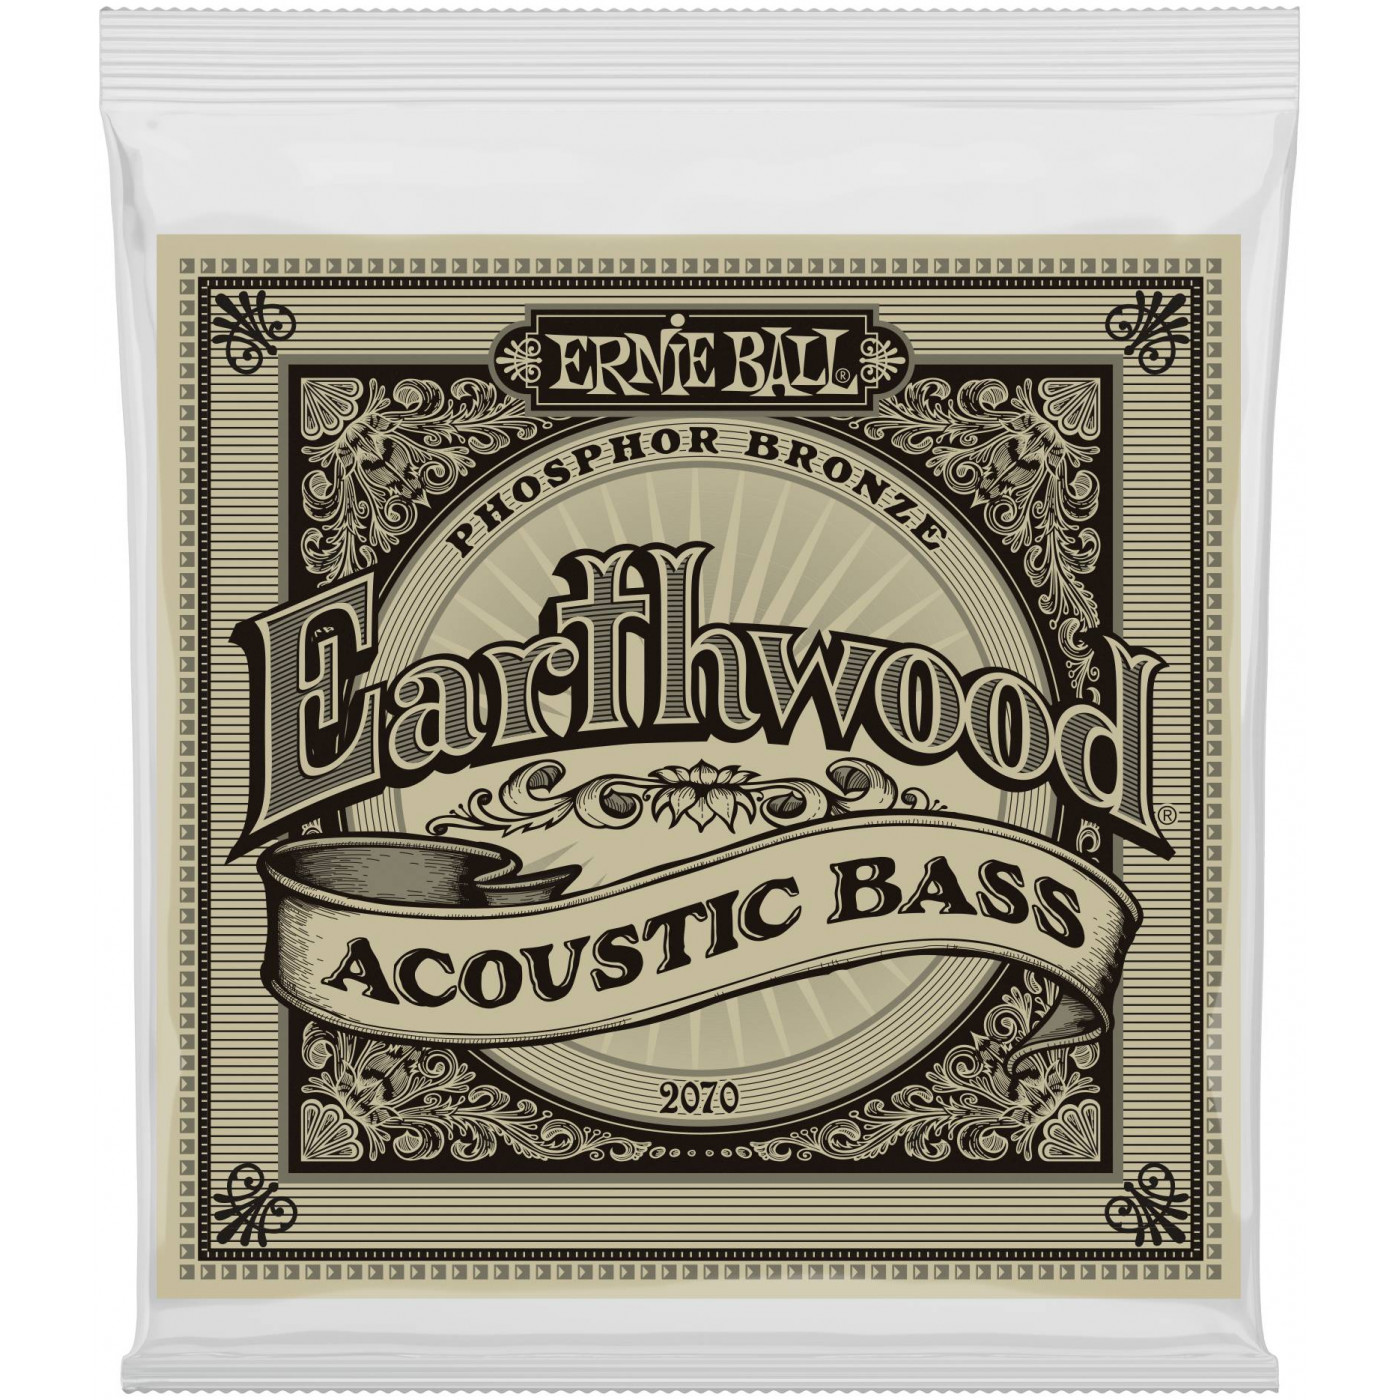 Струны Ernie Ball 2070 Earthwood Acoustic Bass струны для электрогитары ernie ball 2211 nickel wound mondo 10 5 13 5 17 5 30 42 52